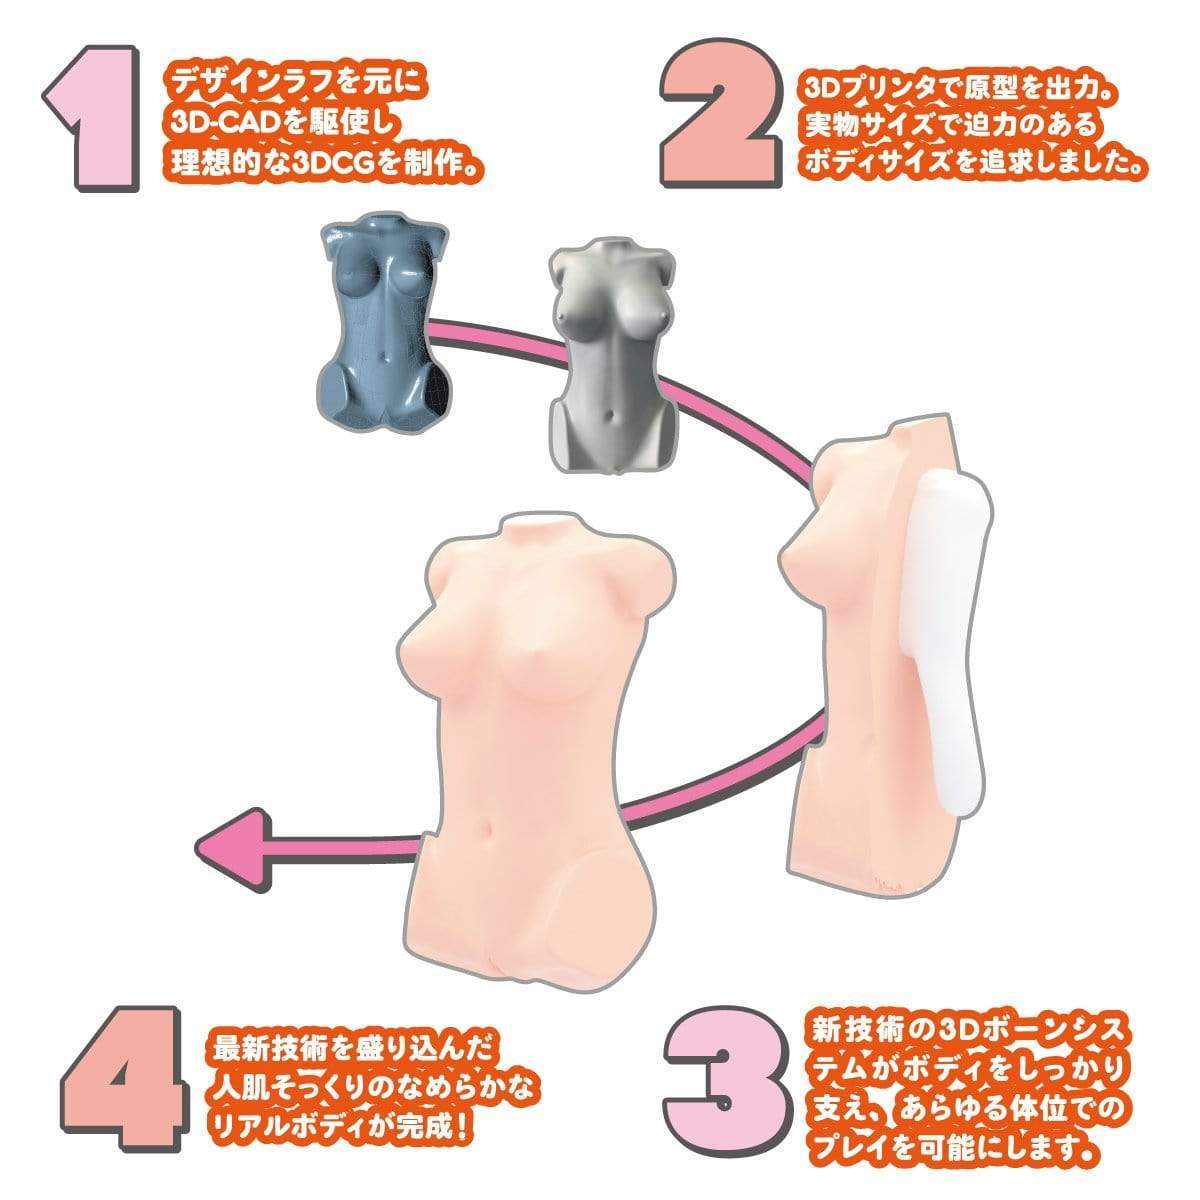 Wild One - Real Body 3D Bone System D Cup Yura Anagawa Doll 9kg (Beige) WO1017 CherryAffairs